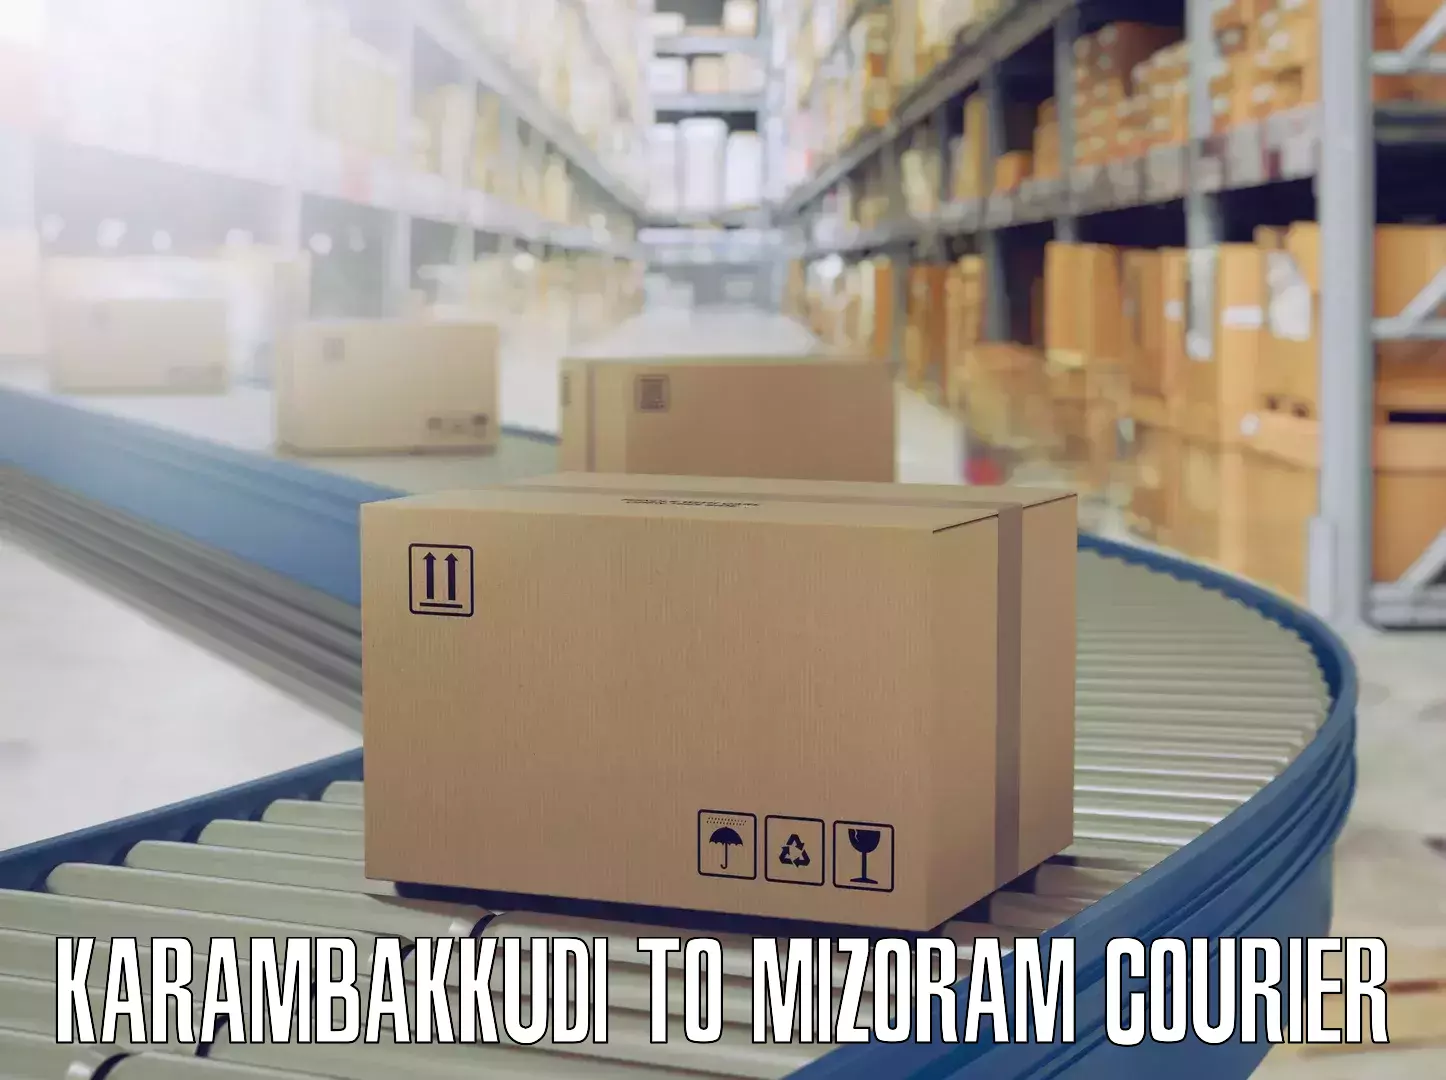 Efficient furniture transport Karambakkudi to Mizoram